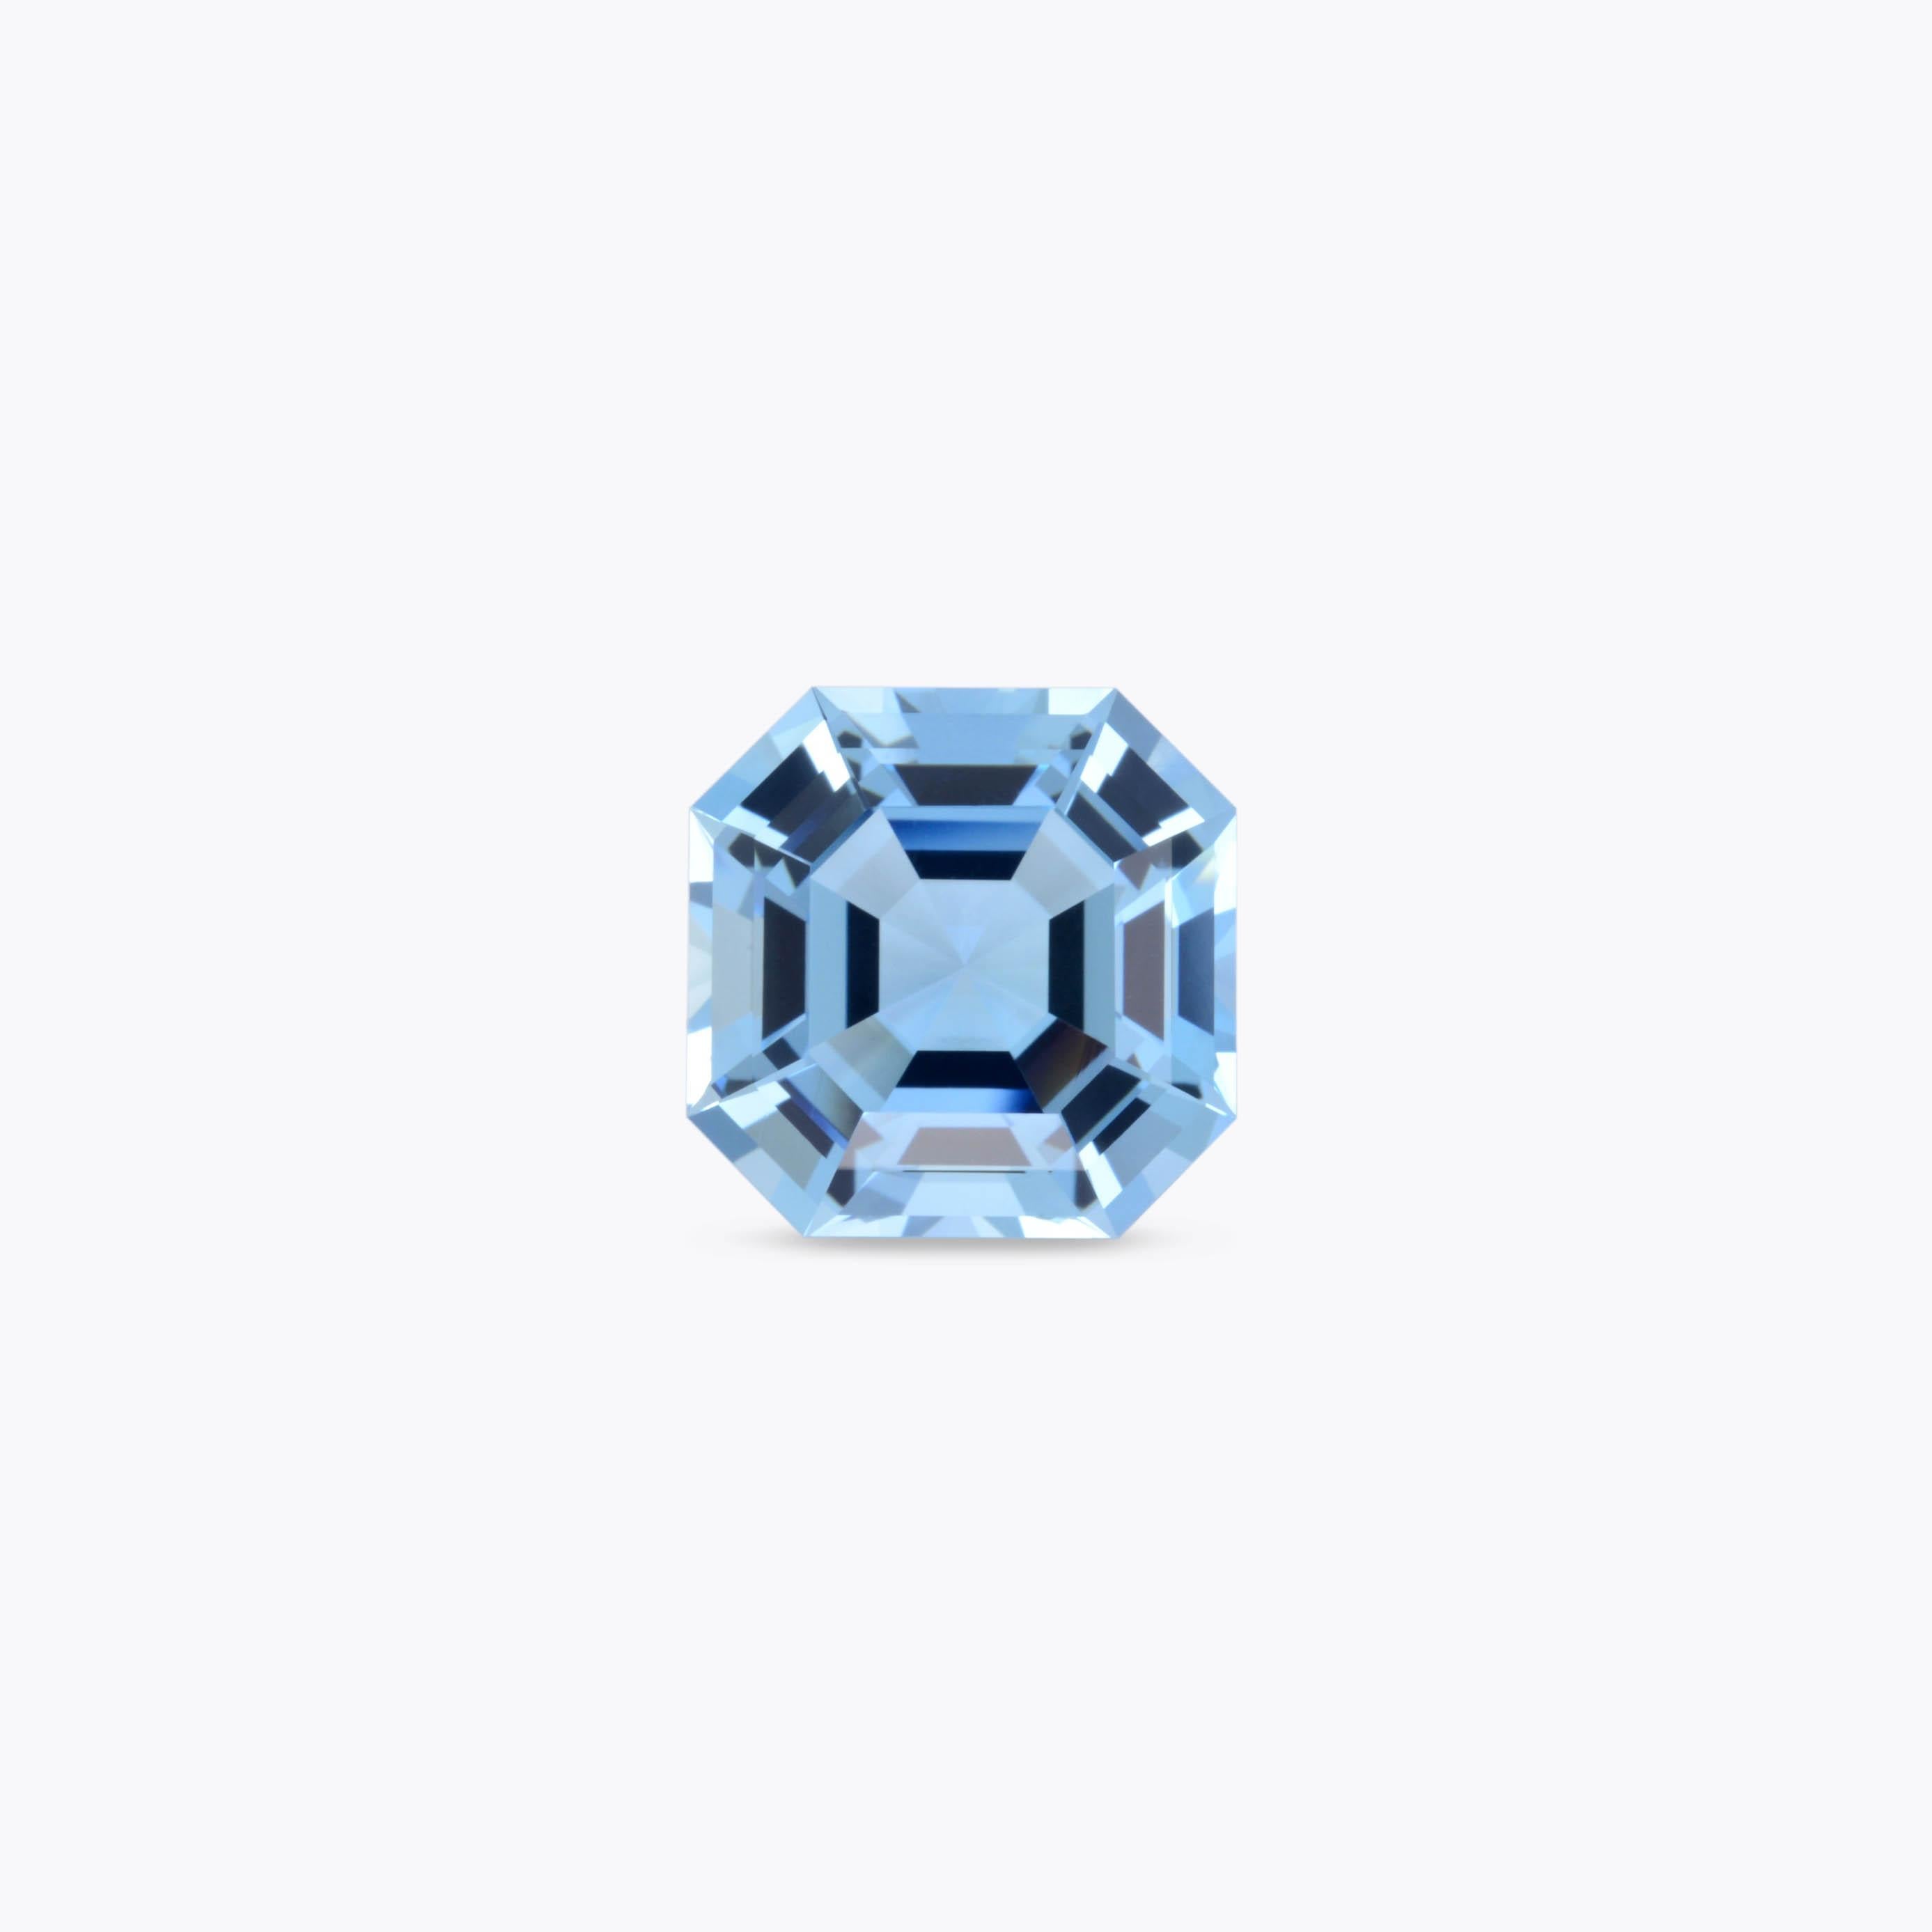 Art Deco Aquamarine Ring Gem 9.96 Carat Square Octagon Loose Gemstone